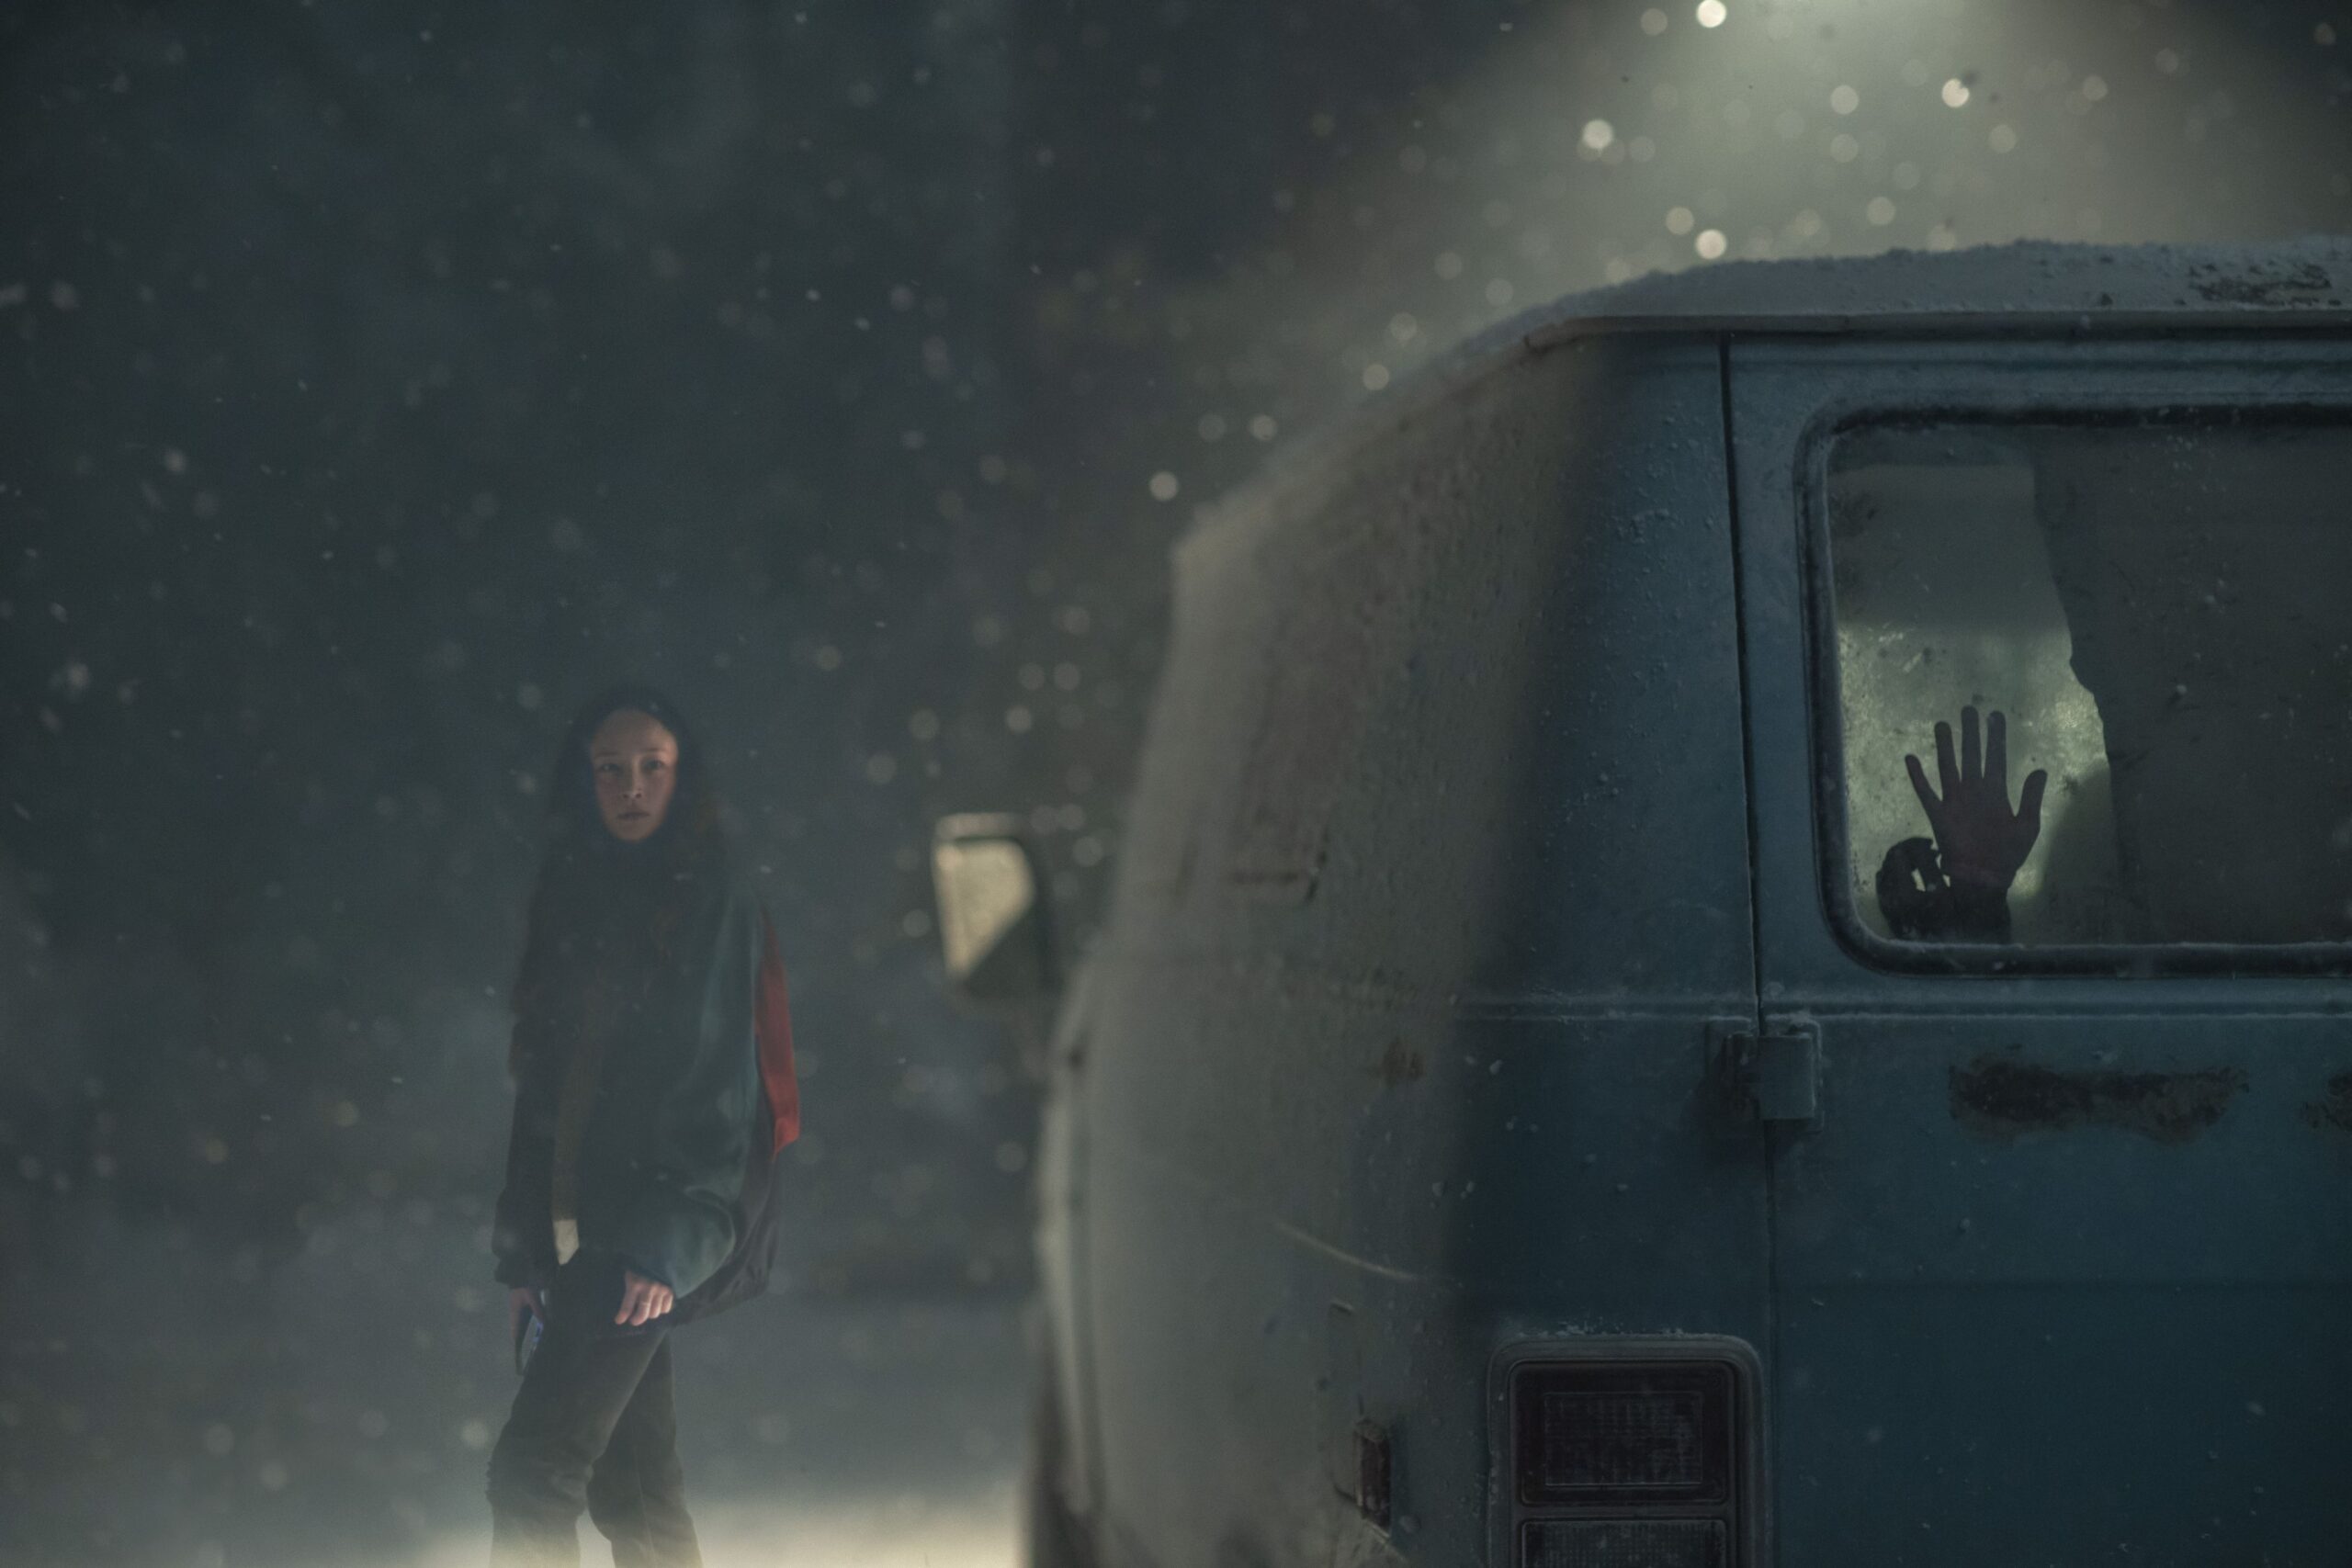 No Exit: Trailer, il poster e immagini del film di Damien Power